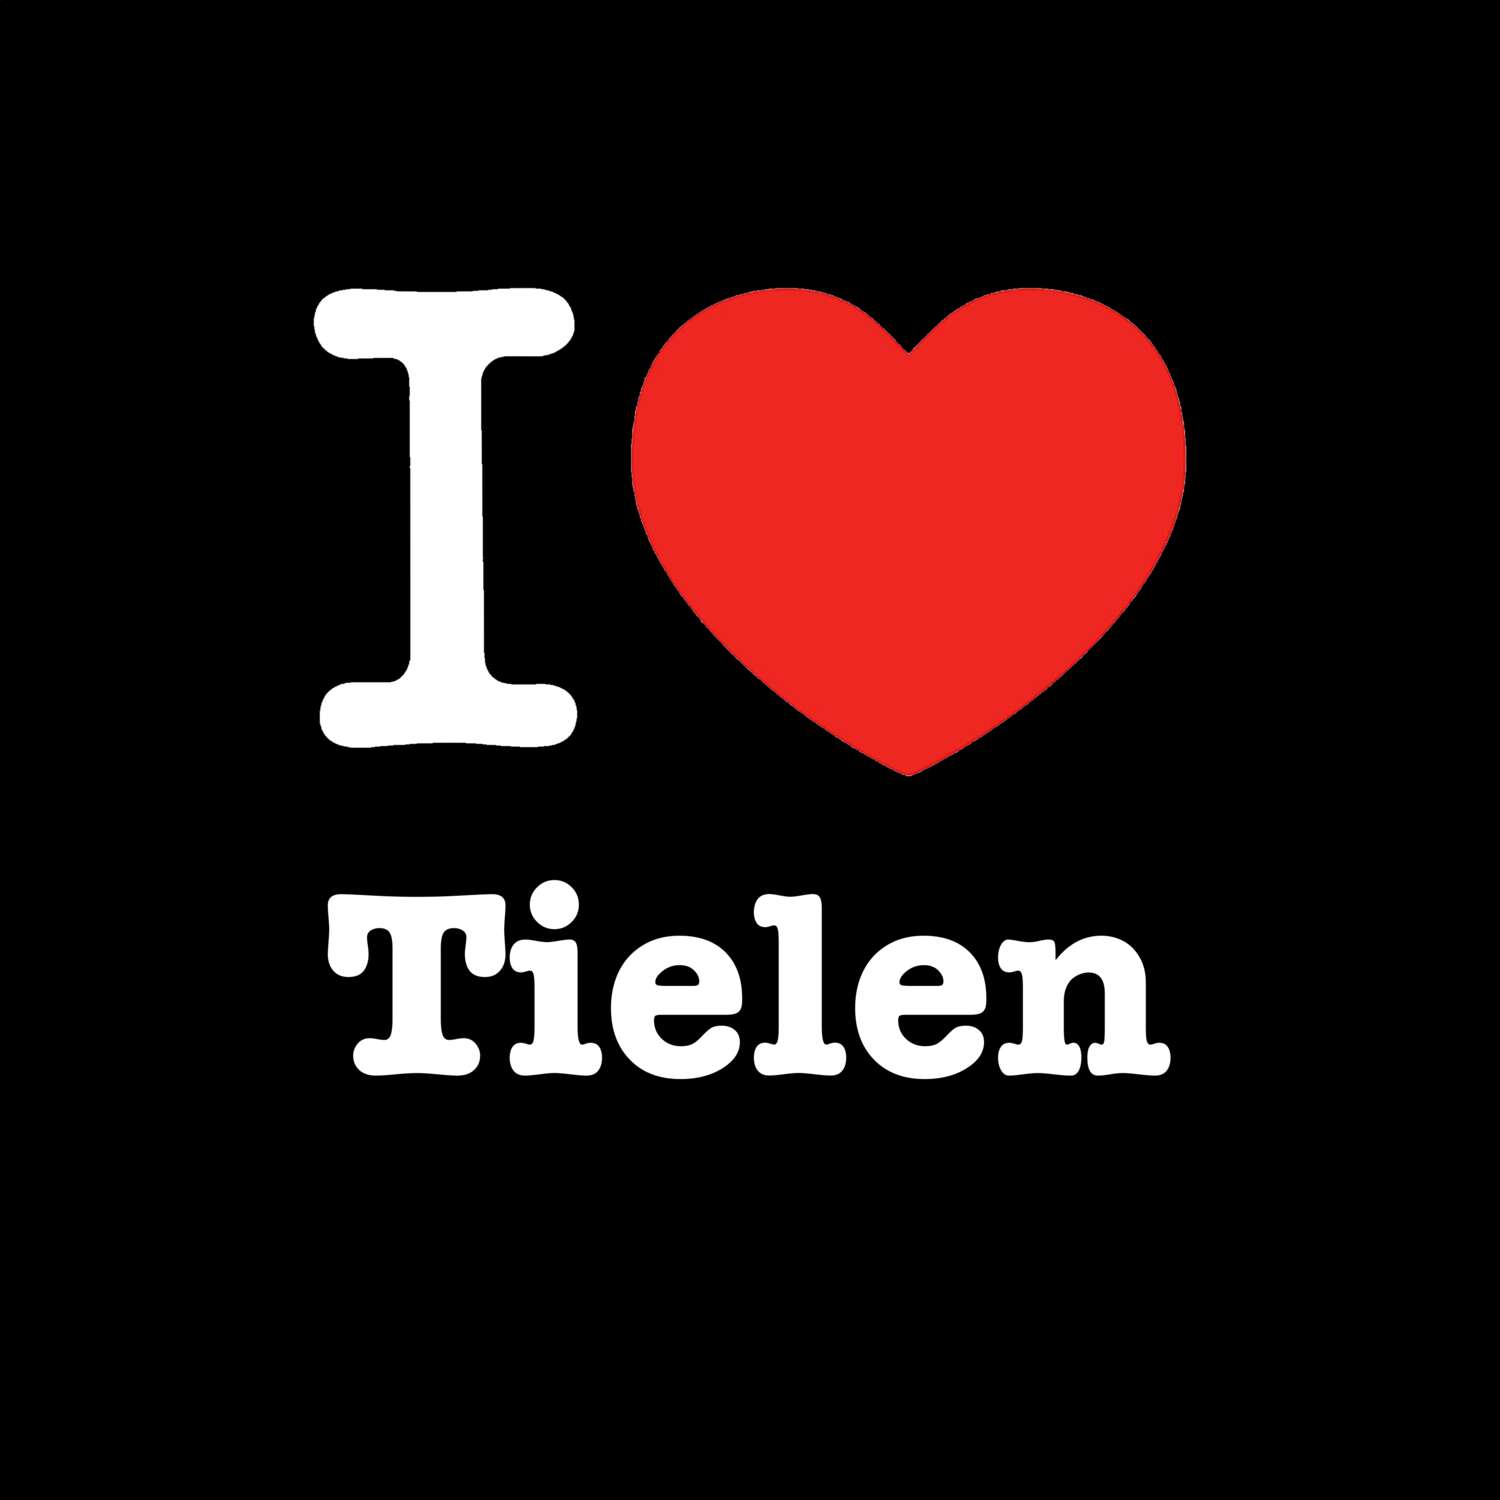 Tielen T-Shirt »I love«